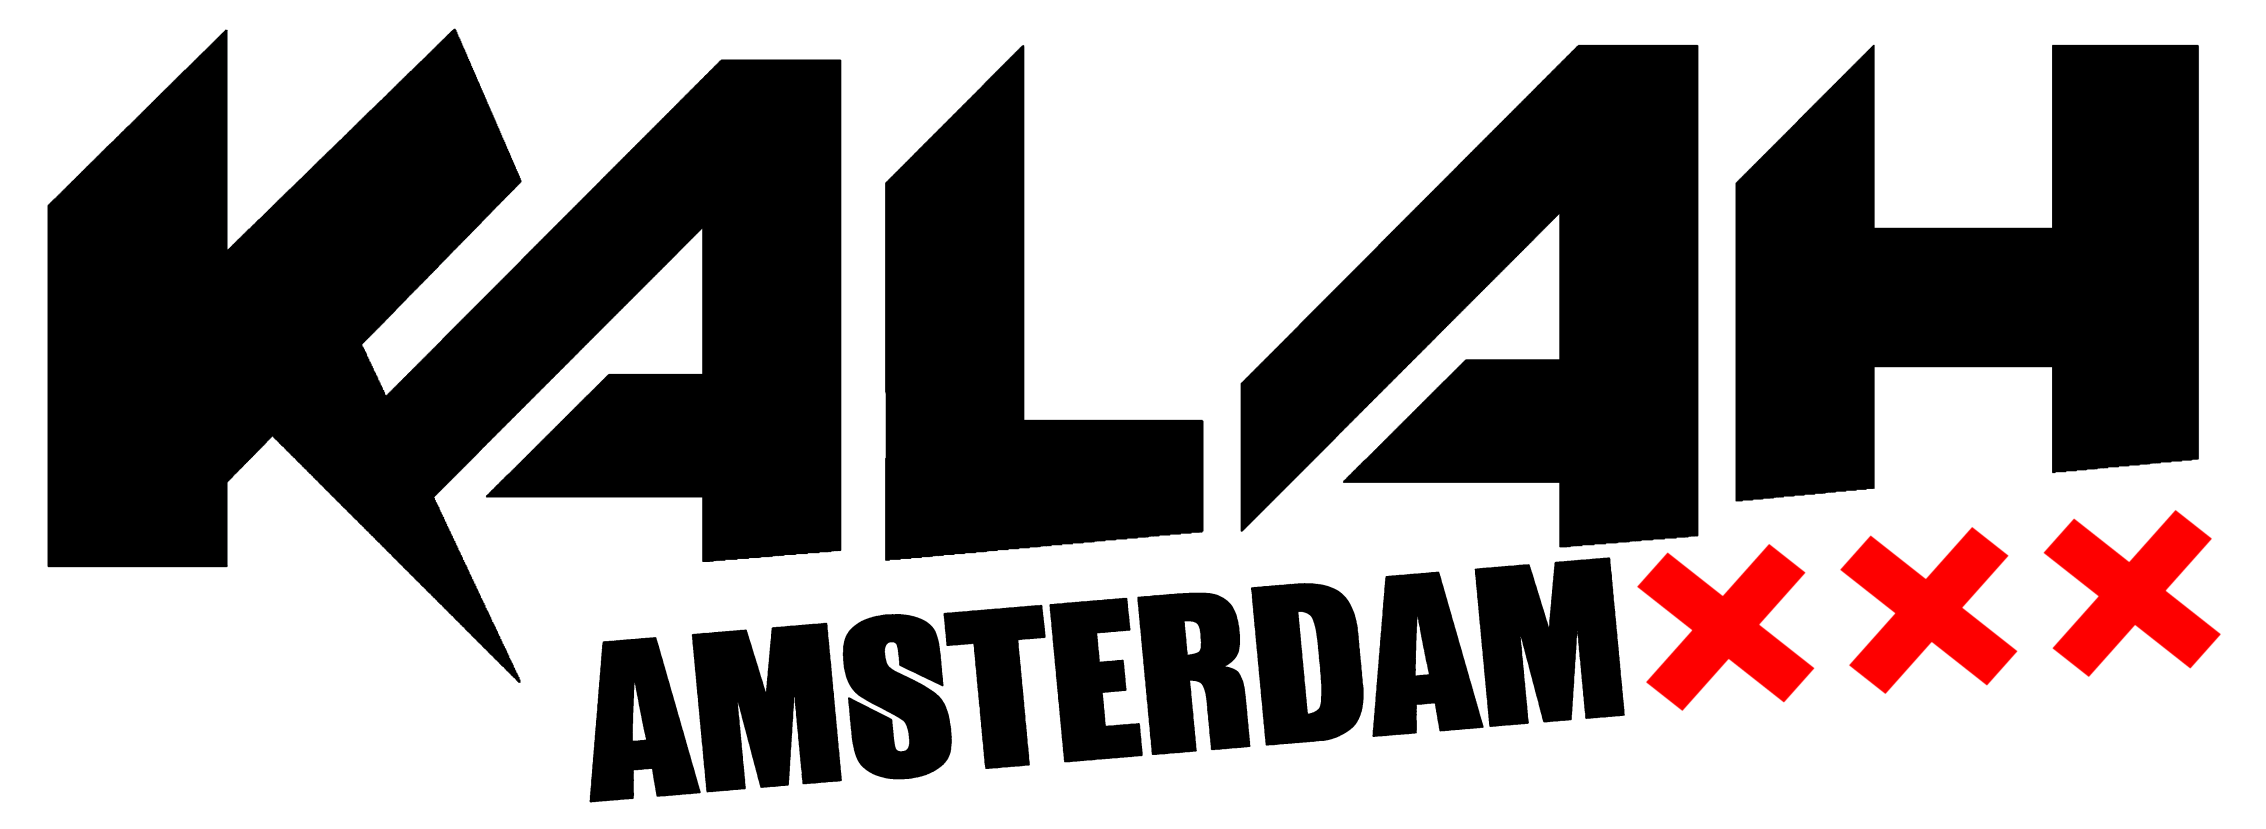 Kalah Amsterdam logo